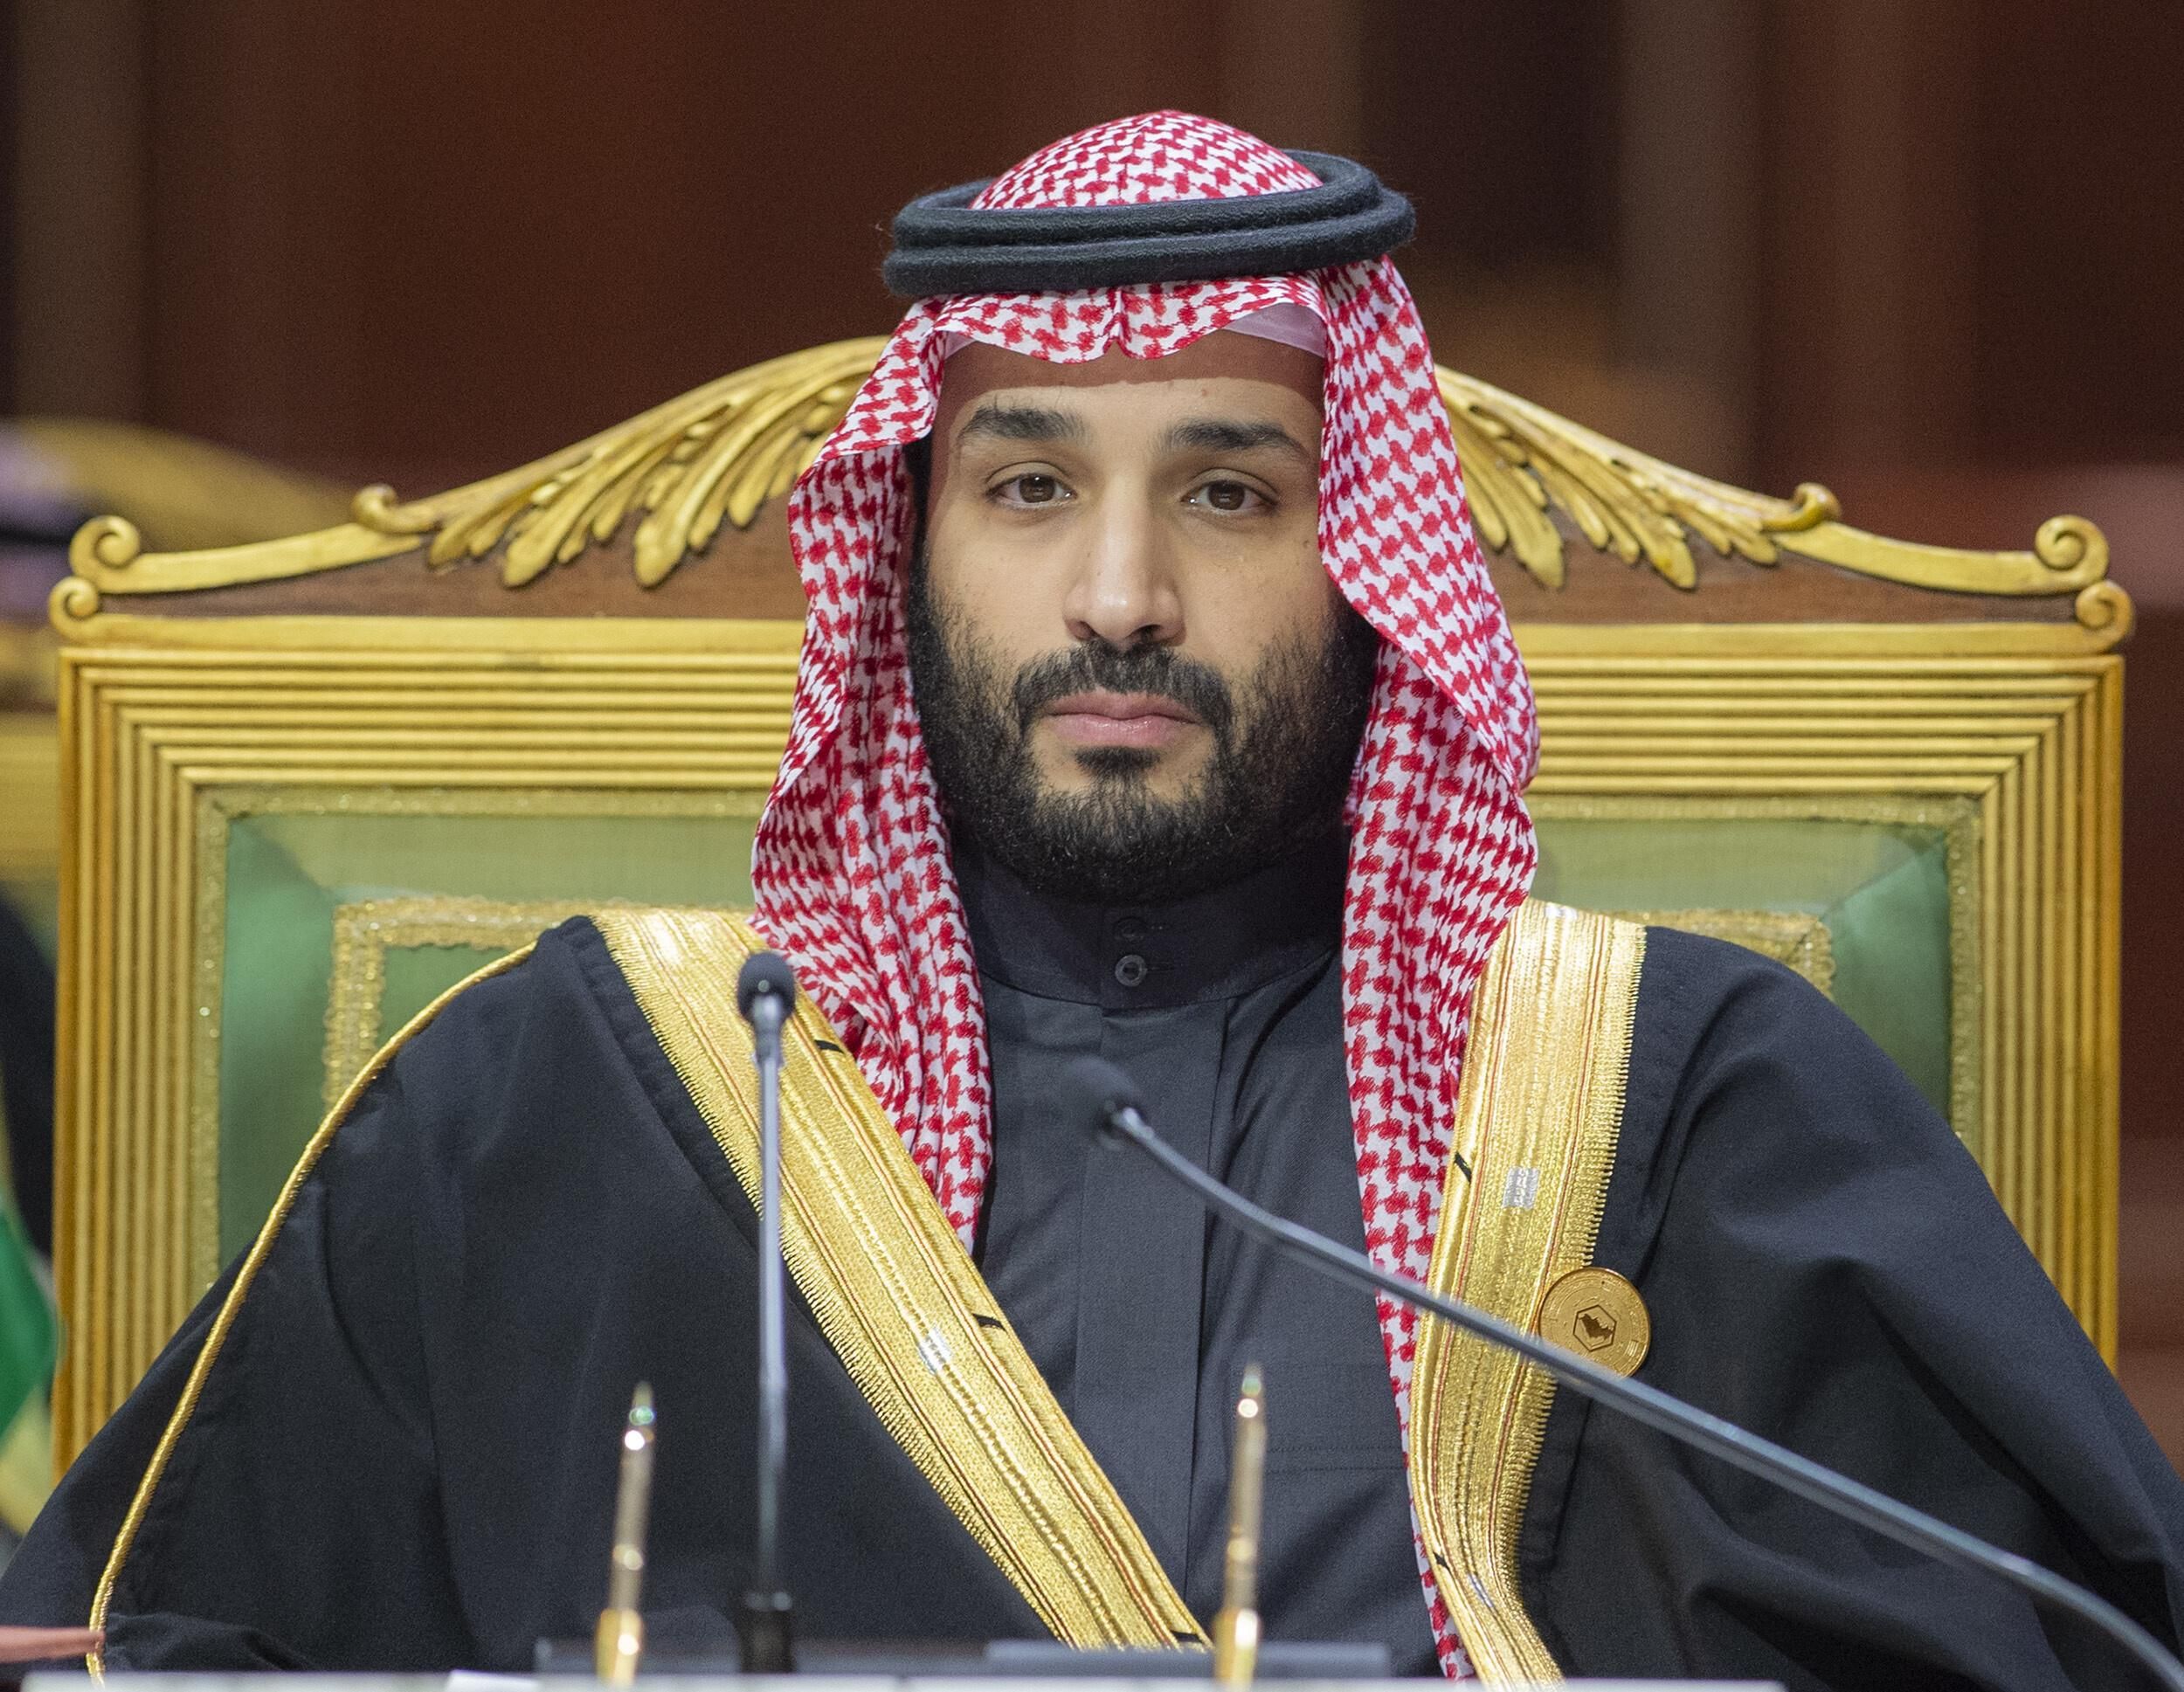 Saudi Crown Prince Mohammed bin Salman attends an event